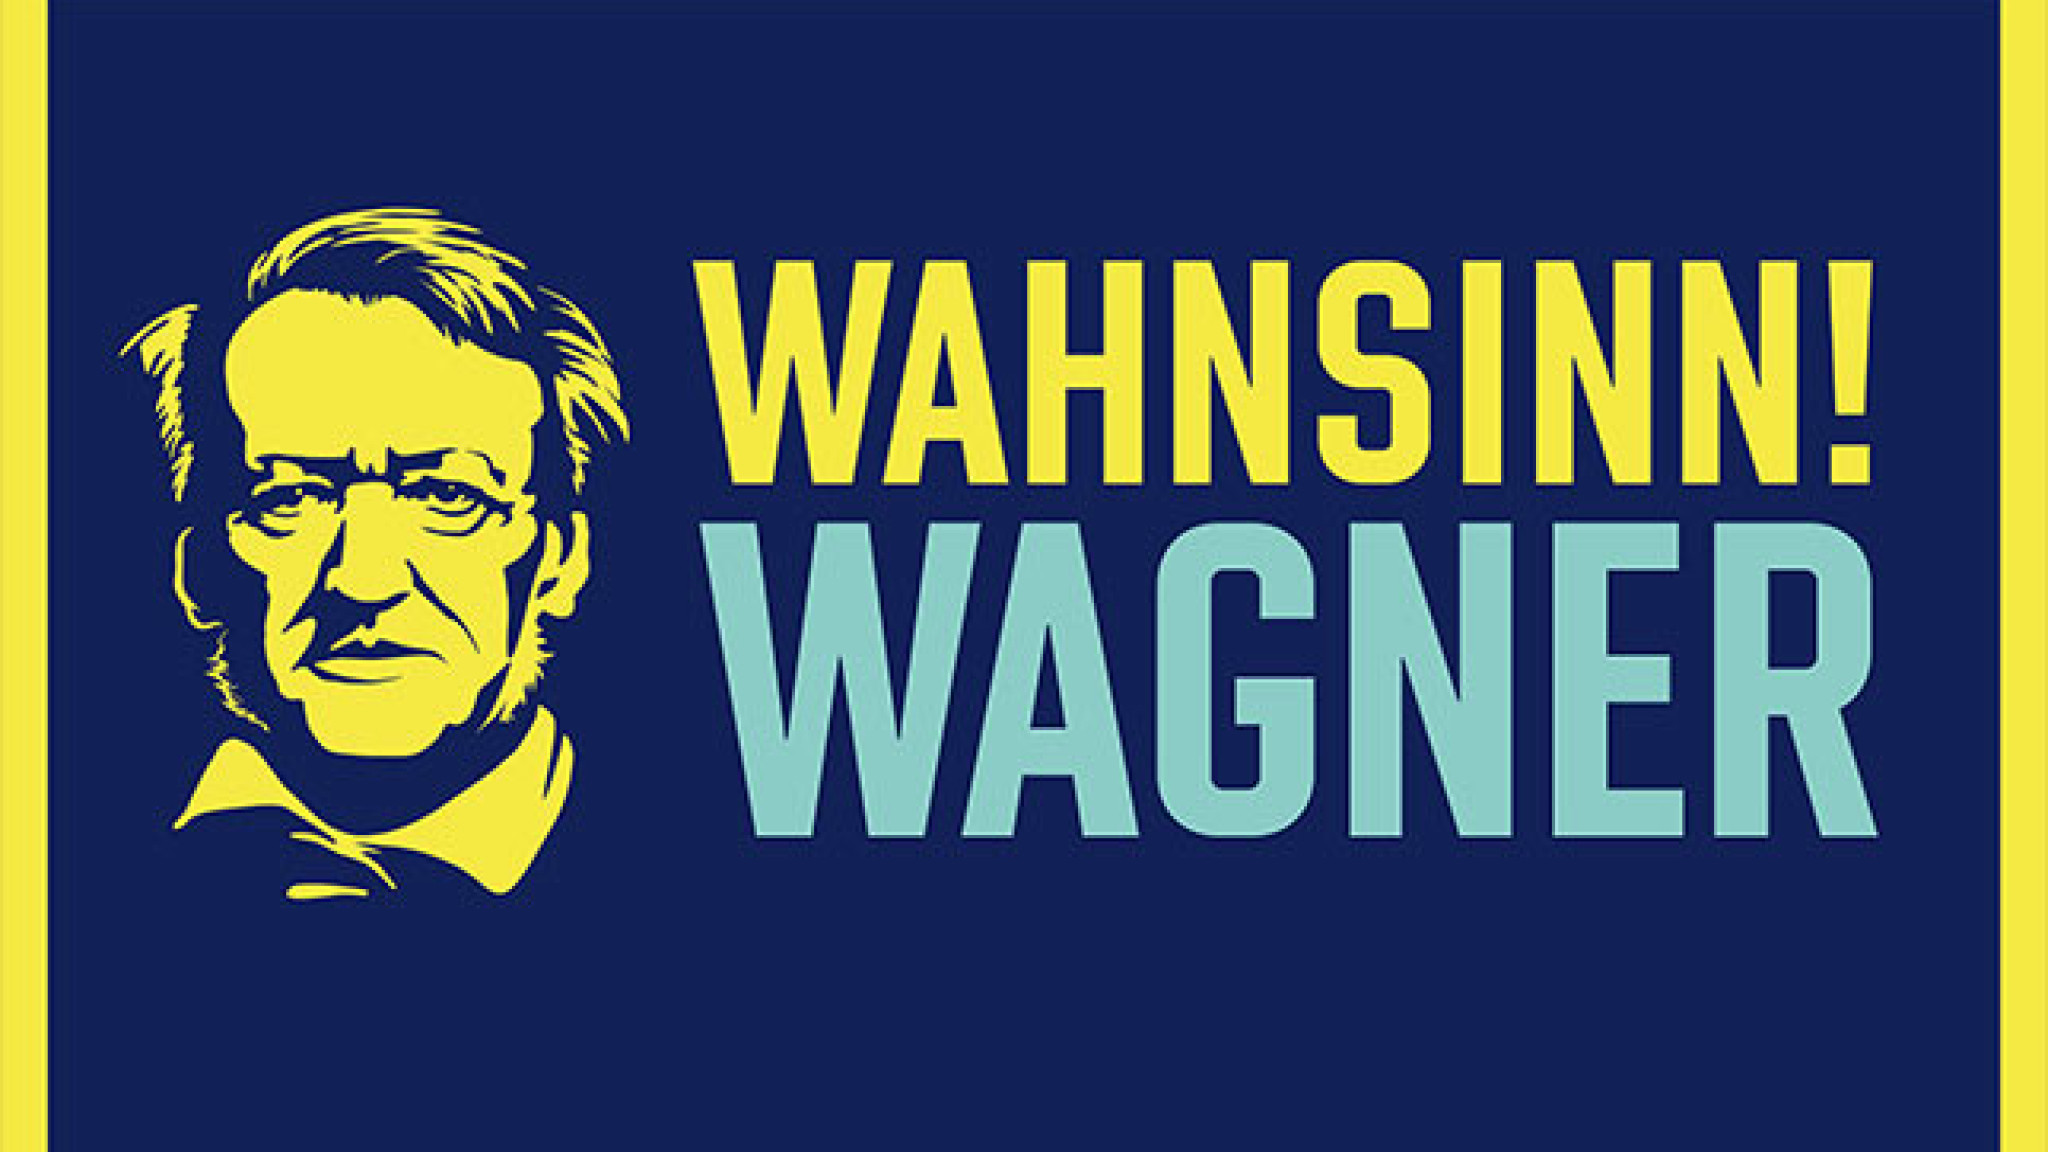 Wahnsinn! Wagner - Am Mittwoch, den 22. Mai jährt sich zum 200. Mal der Geburtstag von Richard Wagner